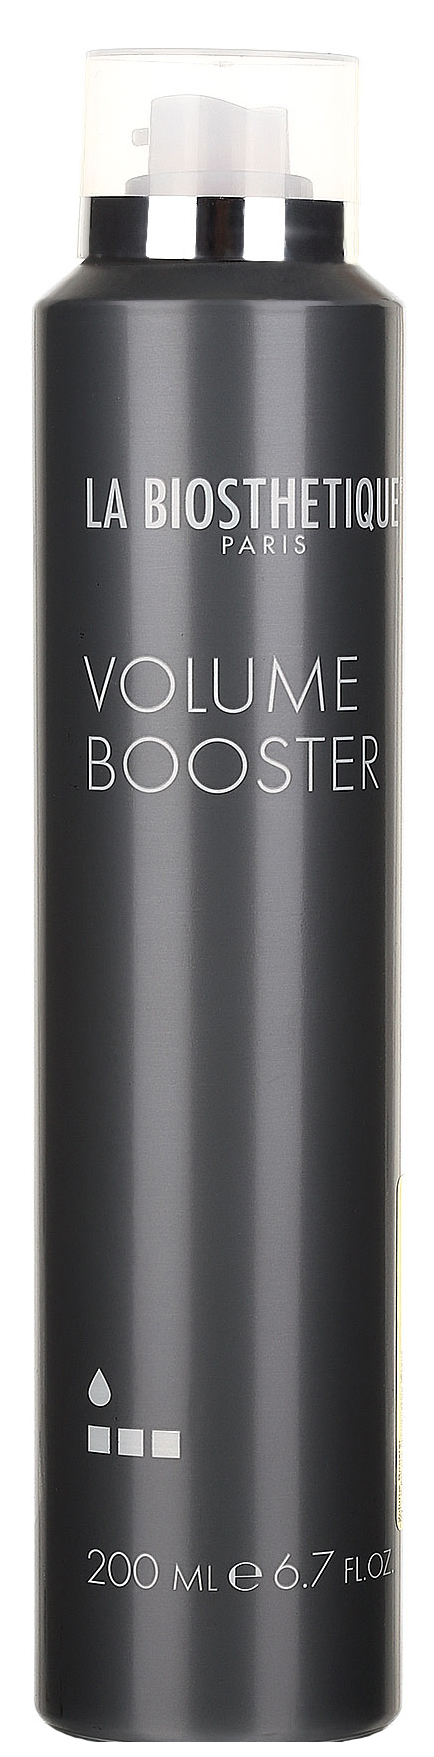 Мусс для волос La Biosthetique Base Volume Booster 200 мл витэкс термоактивная мусс пенка для укладки волос ультрасильной фиксации lux volume 200